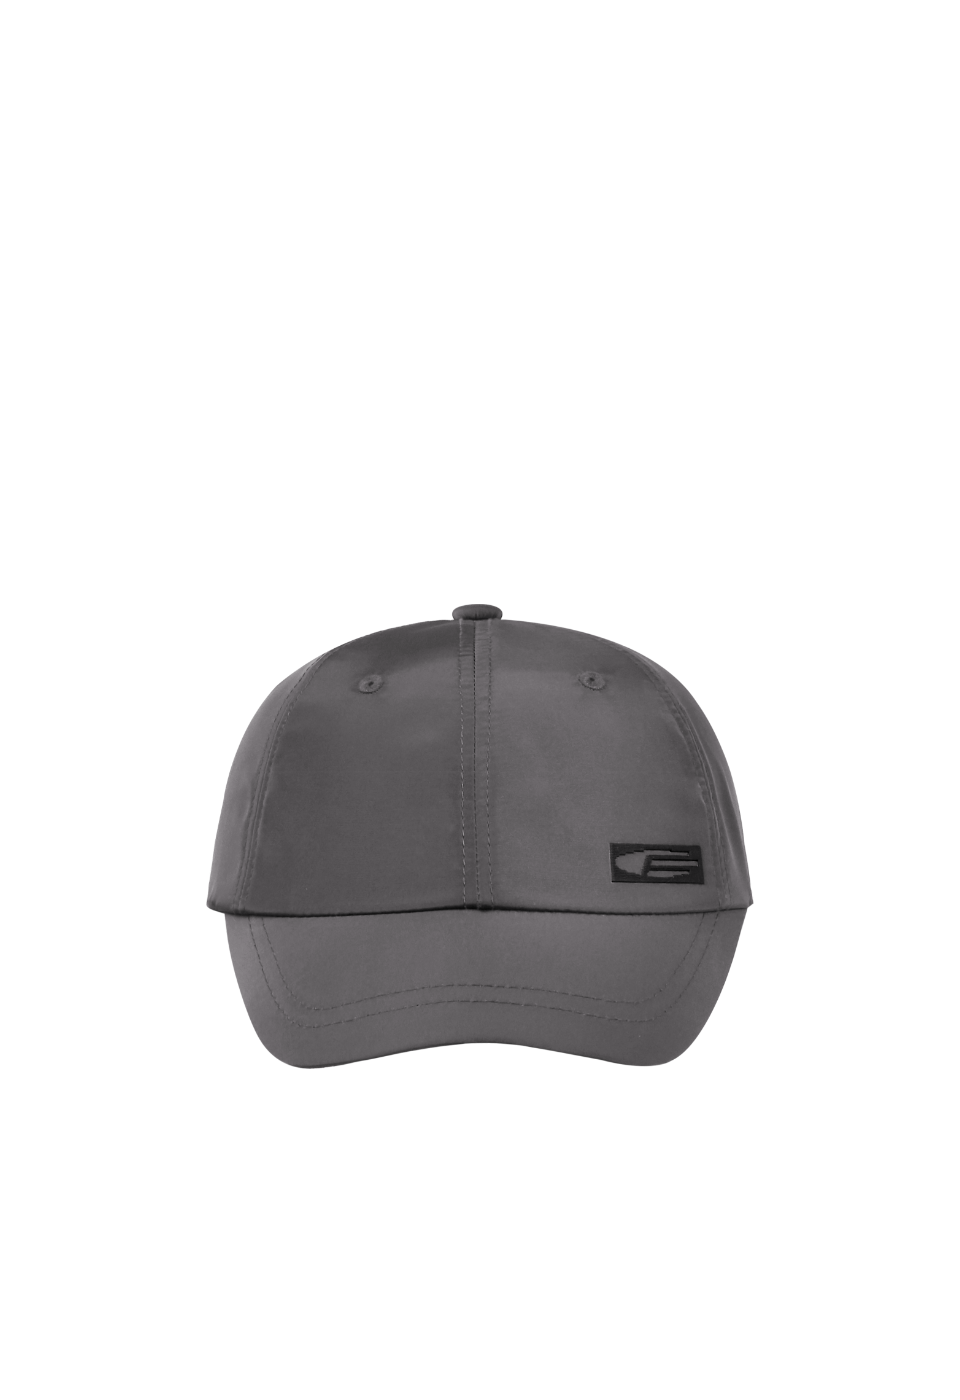 NIGHTRUNNER LINK CAP, Dark Gray